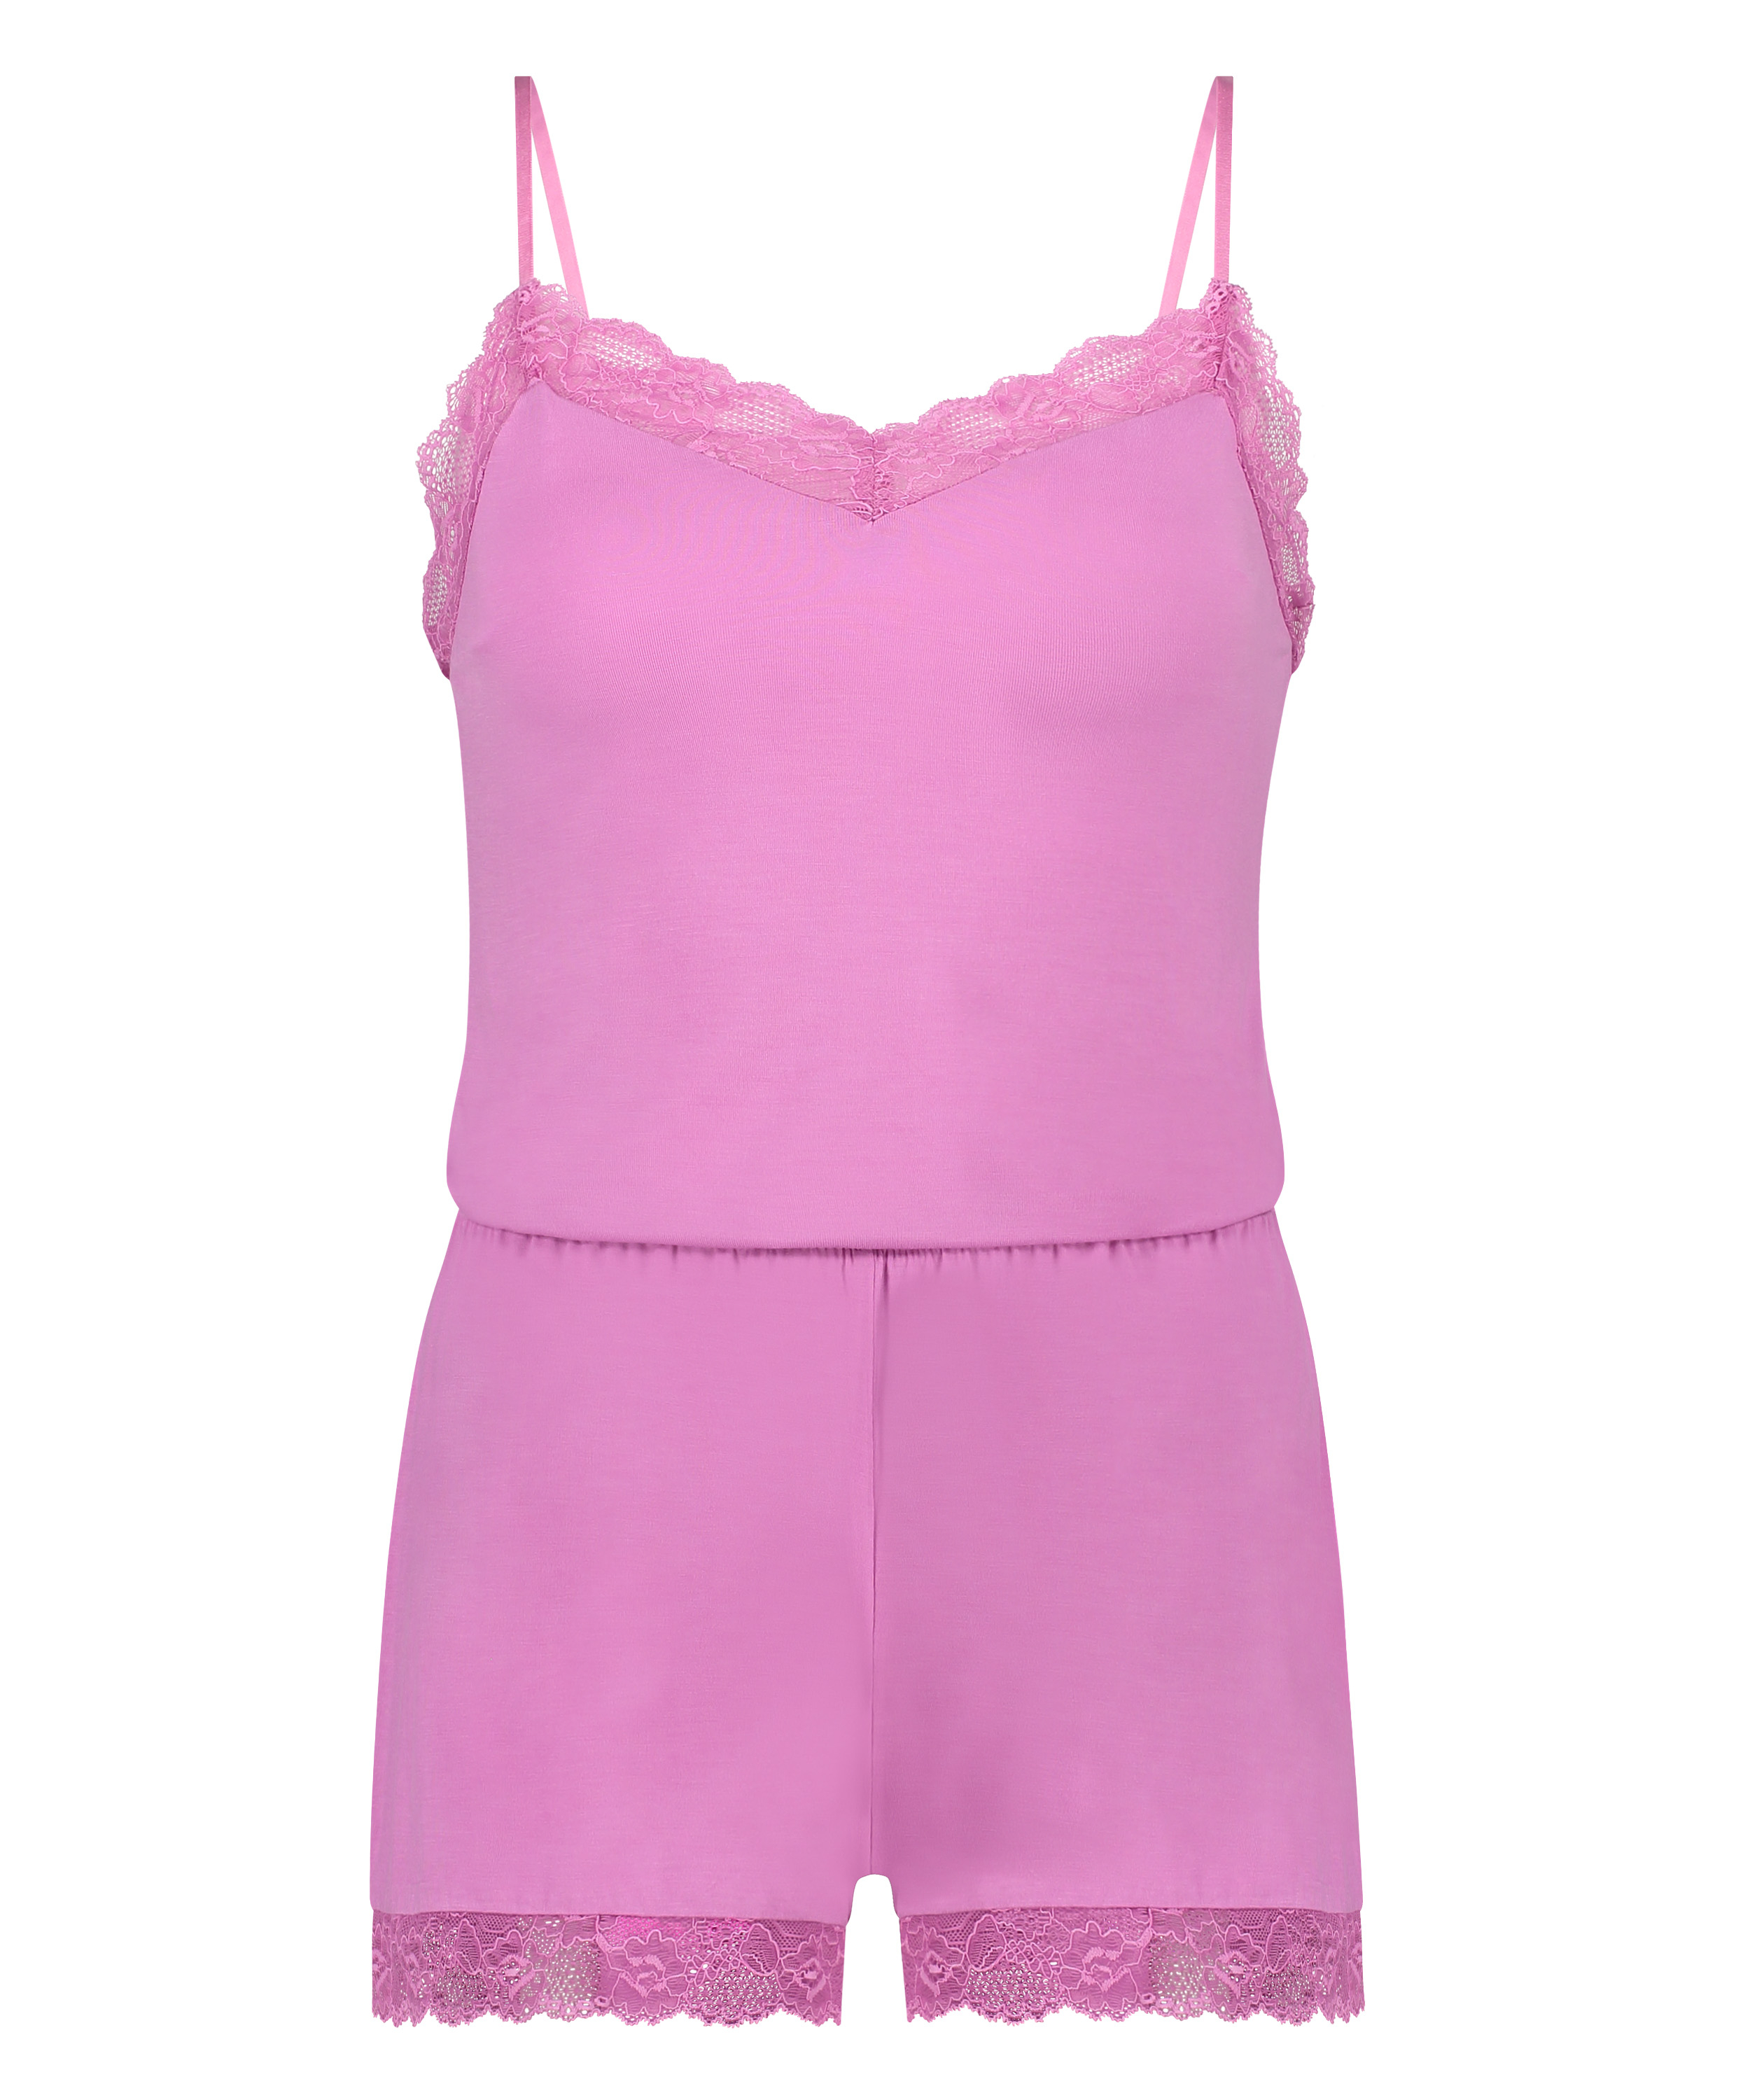 Cami Short Pyjama Set, Pink, main